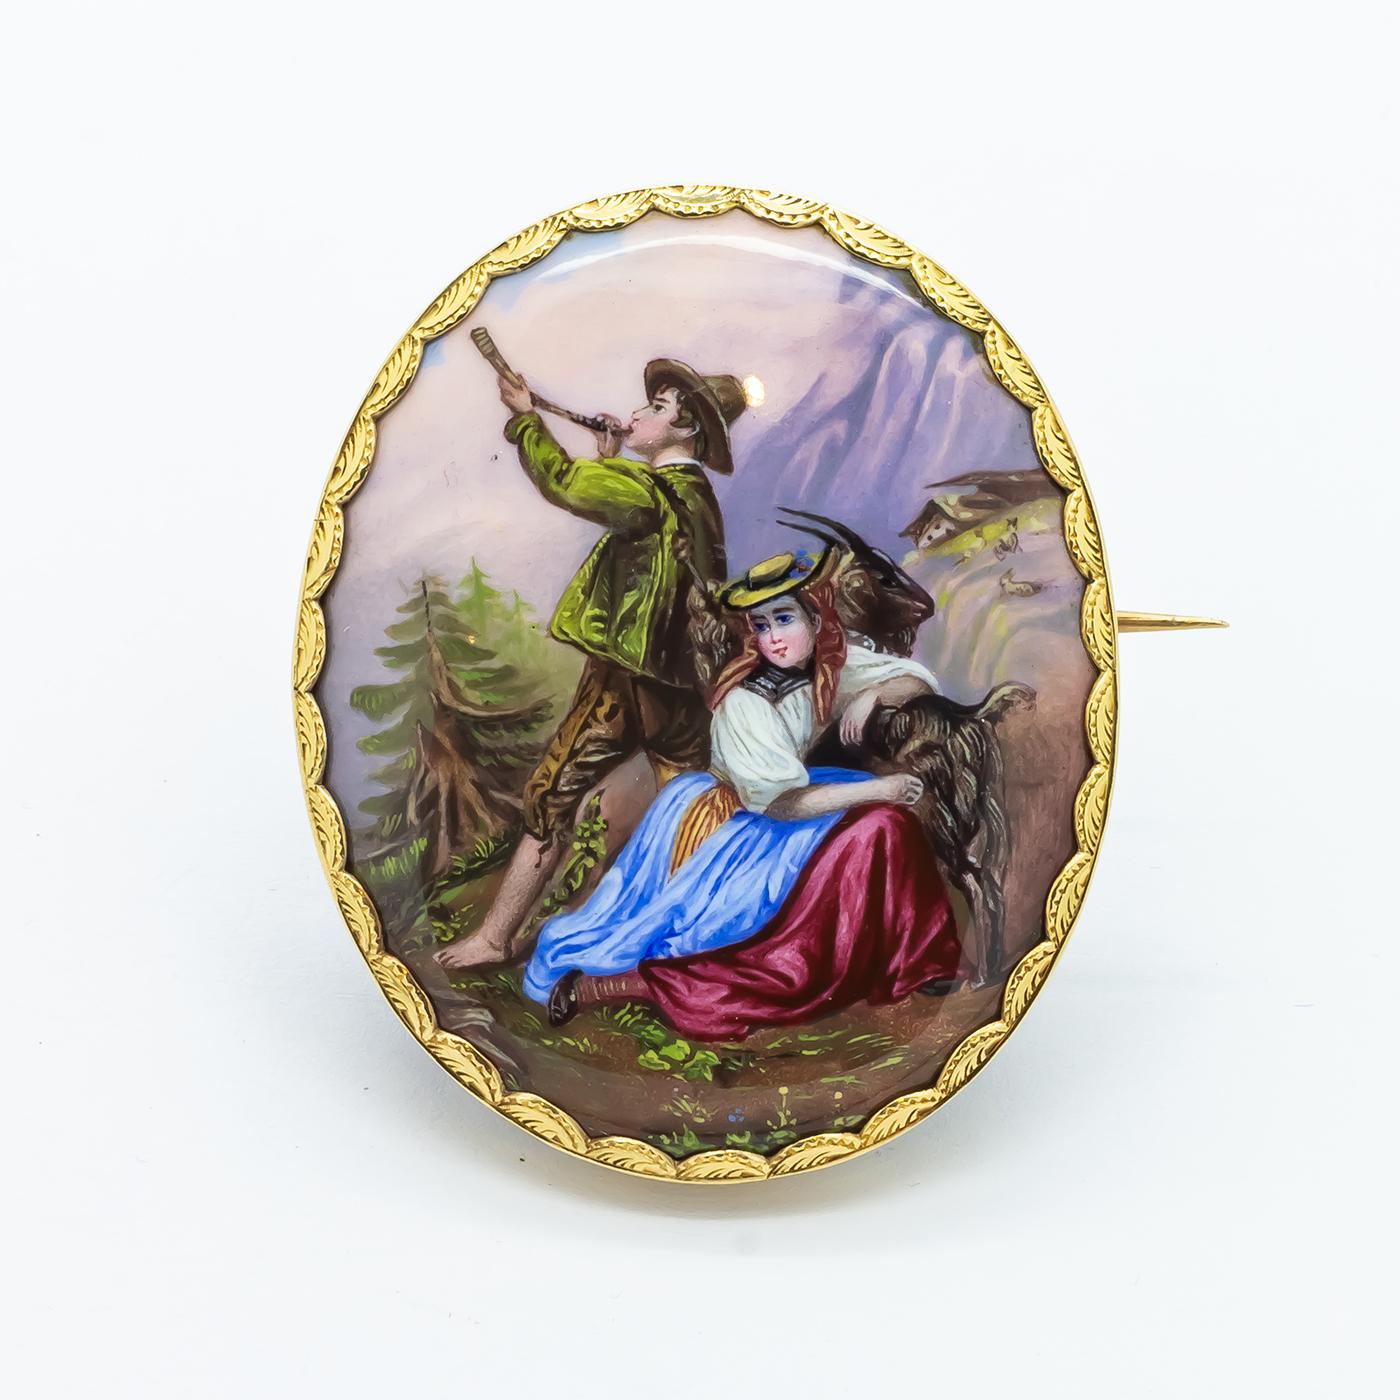 Broche ancienne en émail suisse, représentant une scène de montagne, avec une femme, en robe paysanne régionale, s'appuyant sur une chèvre et un homme soufflant dans une corne, avec des chèvres et un chalet à l'arrière-plan, sur une plaque émaillée